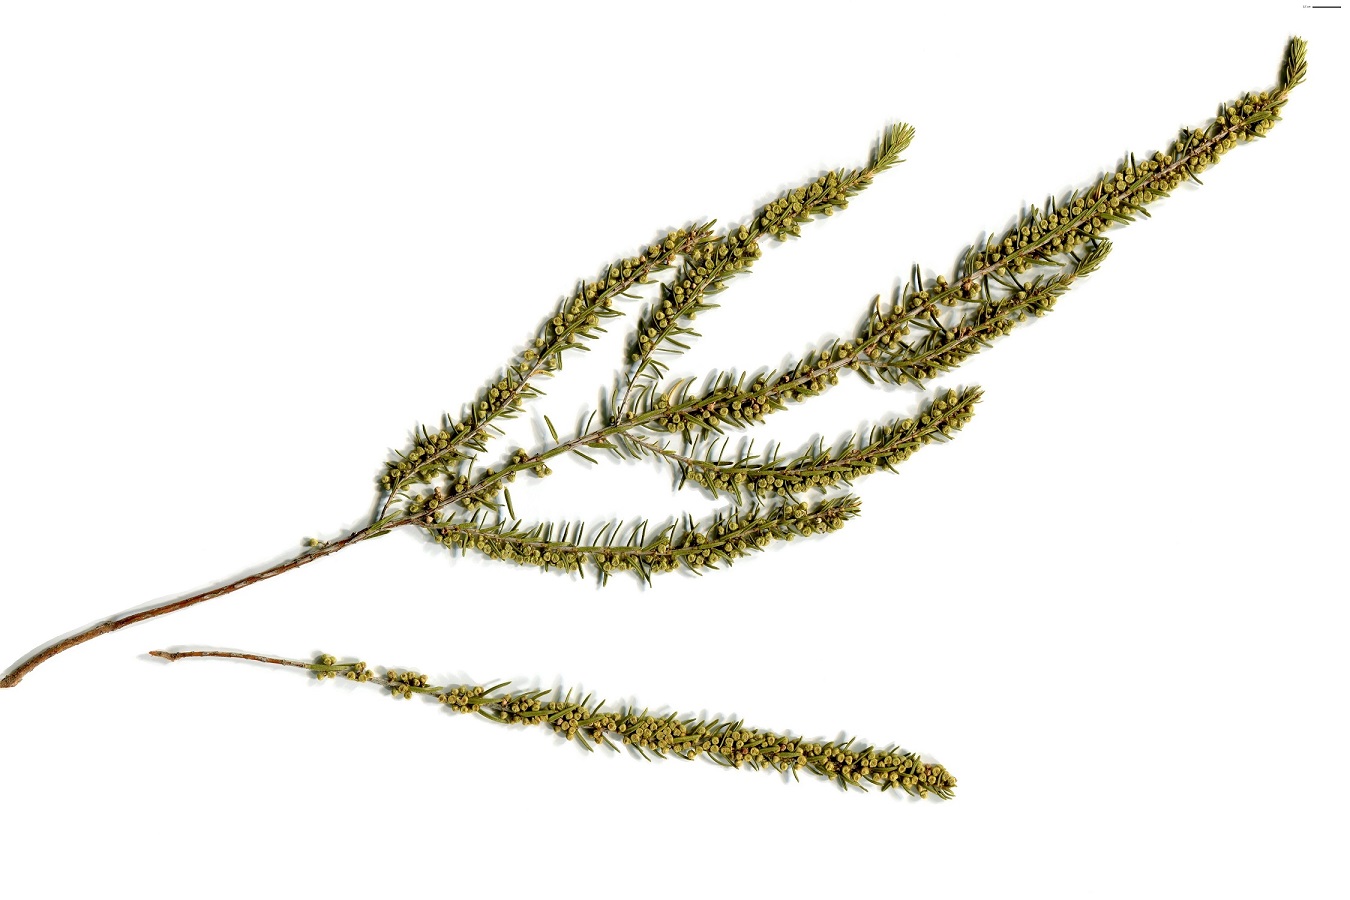 Erica scoparia subsp. scoparia (Ericaceae)